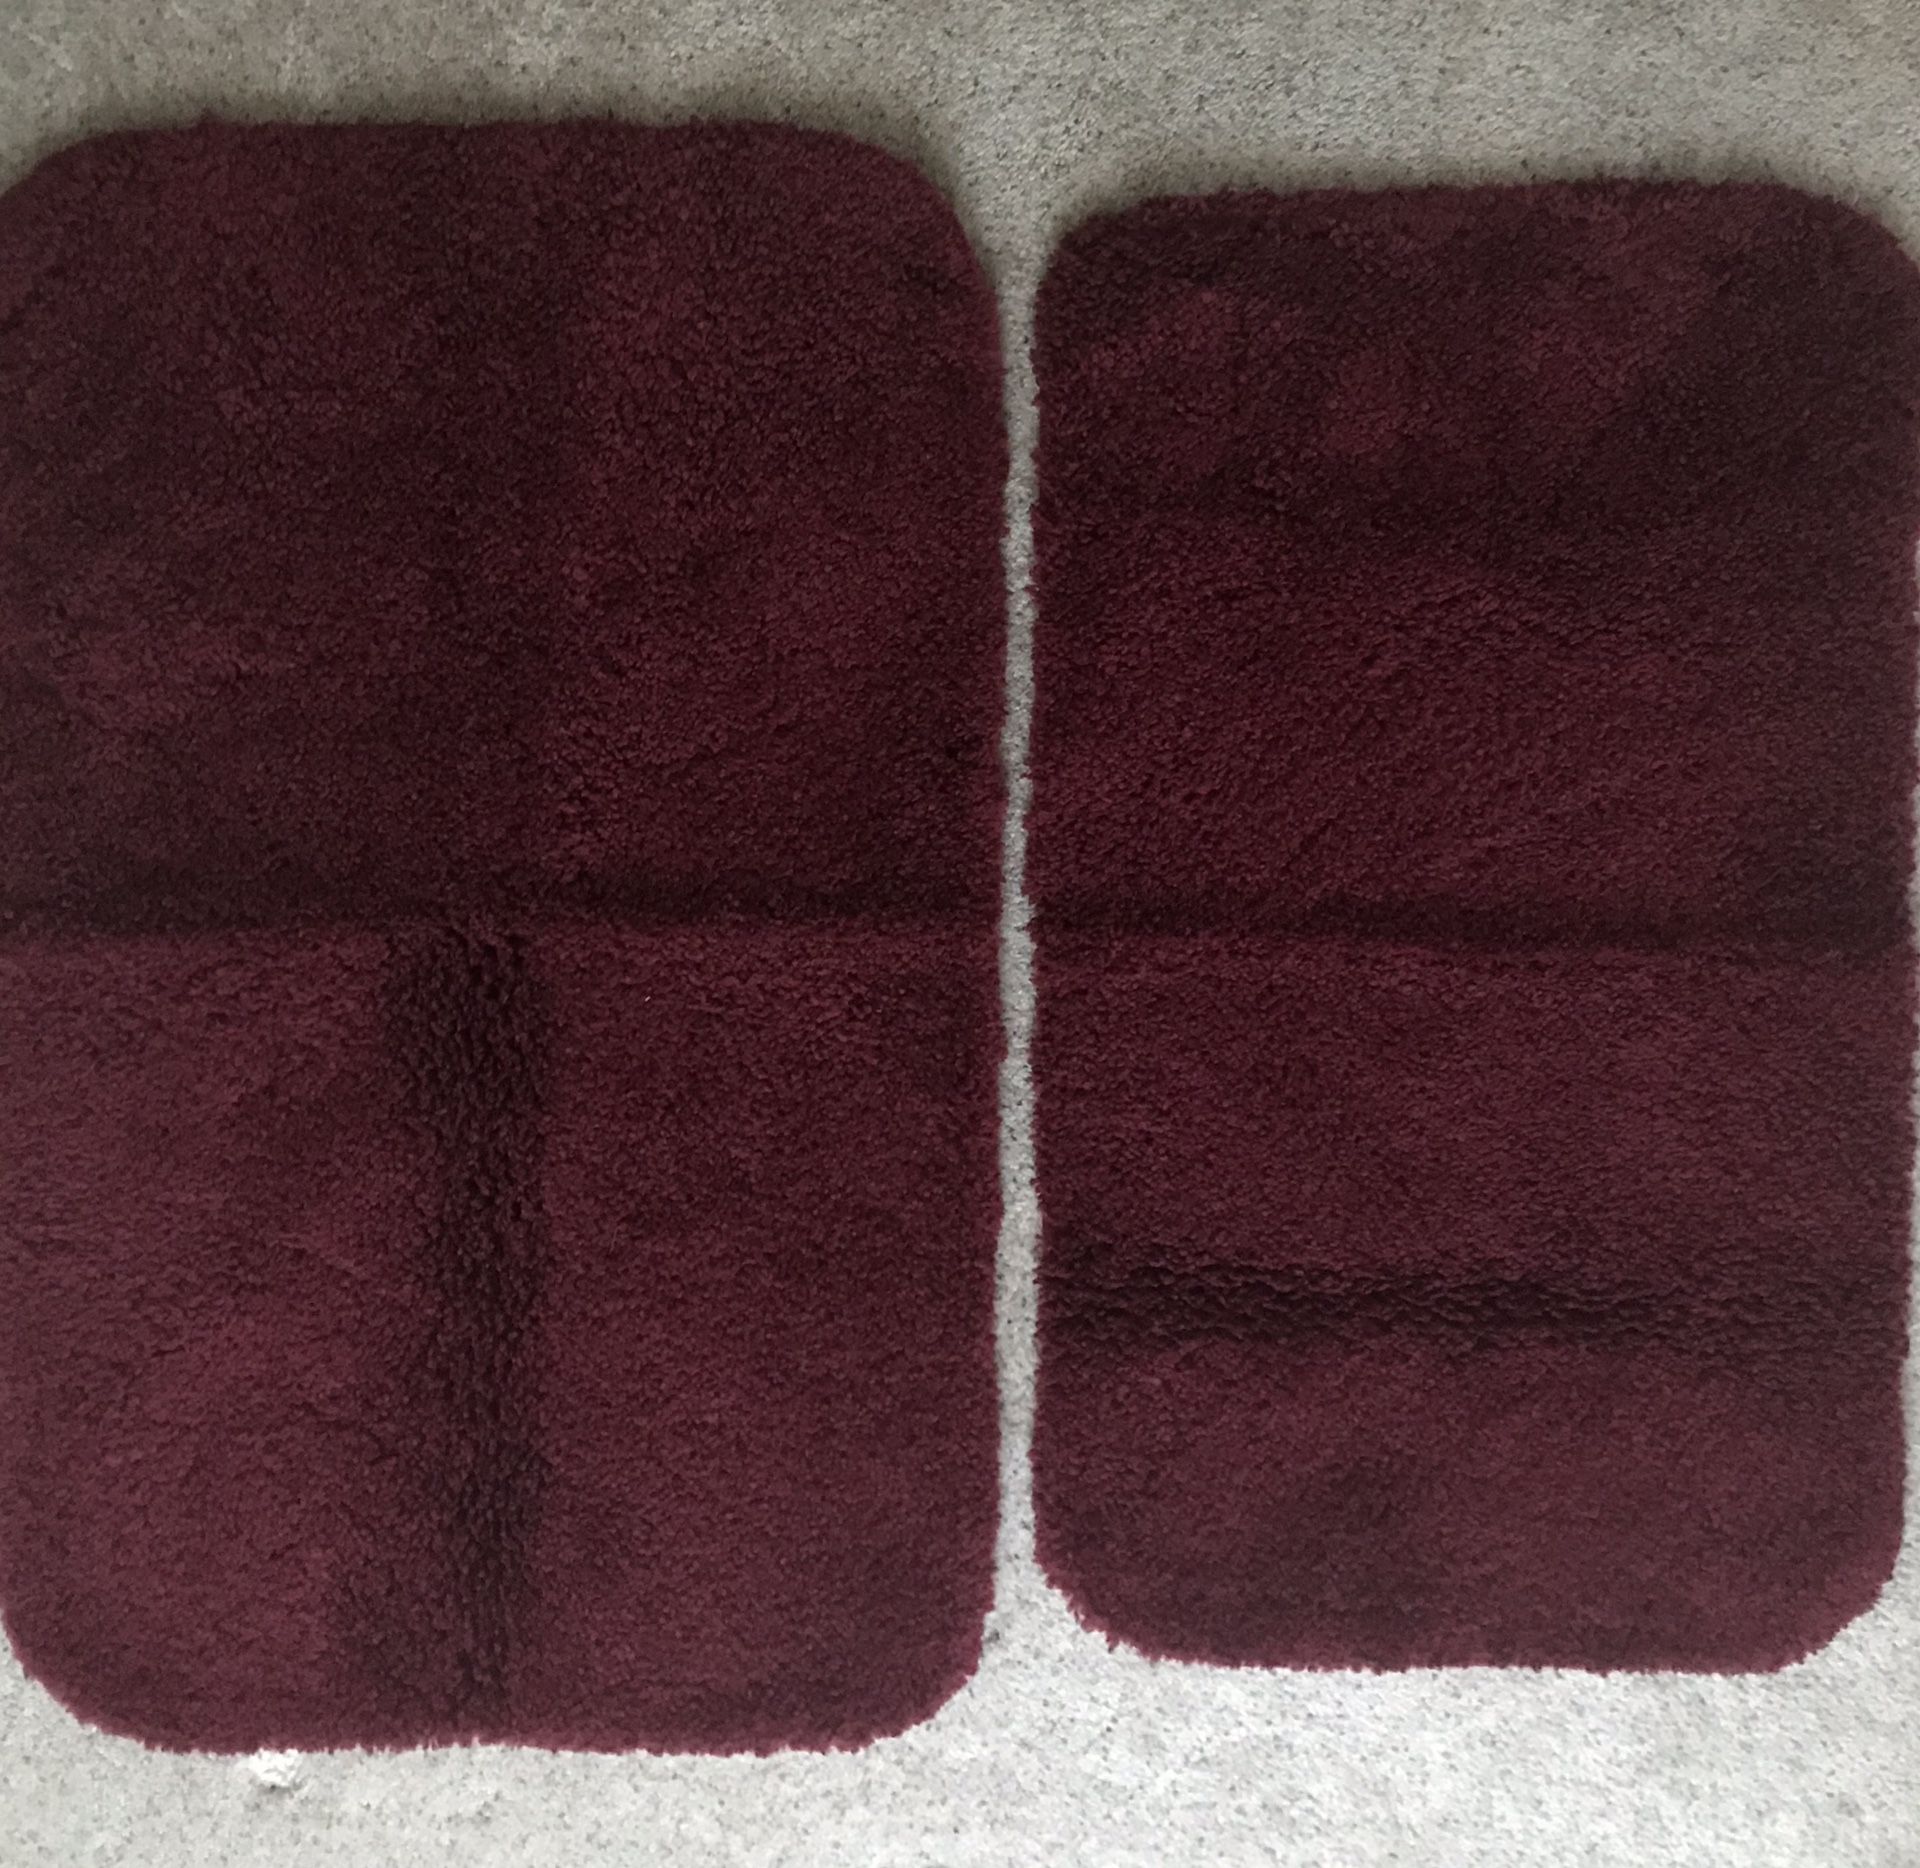 Bathroom floor mats